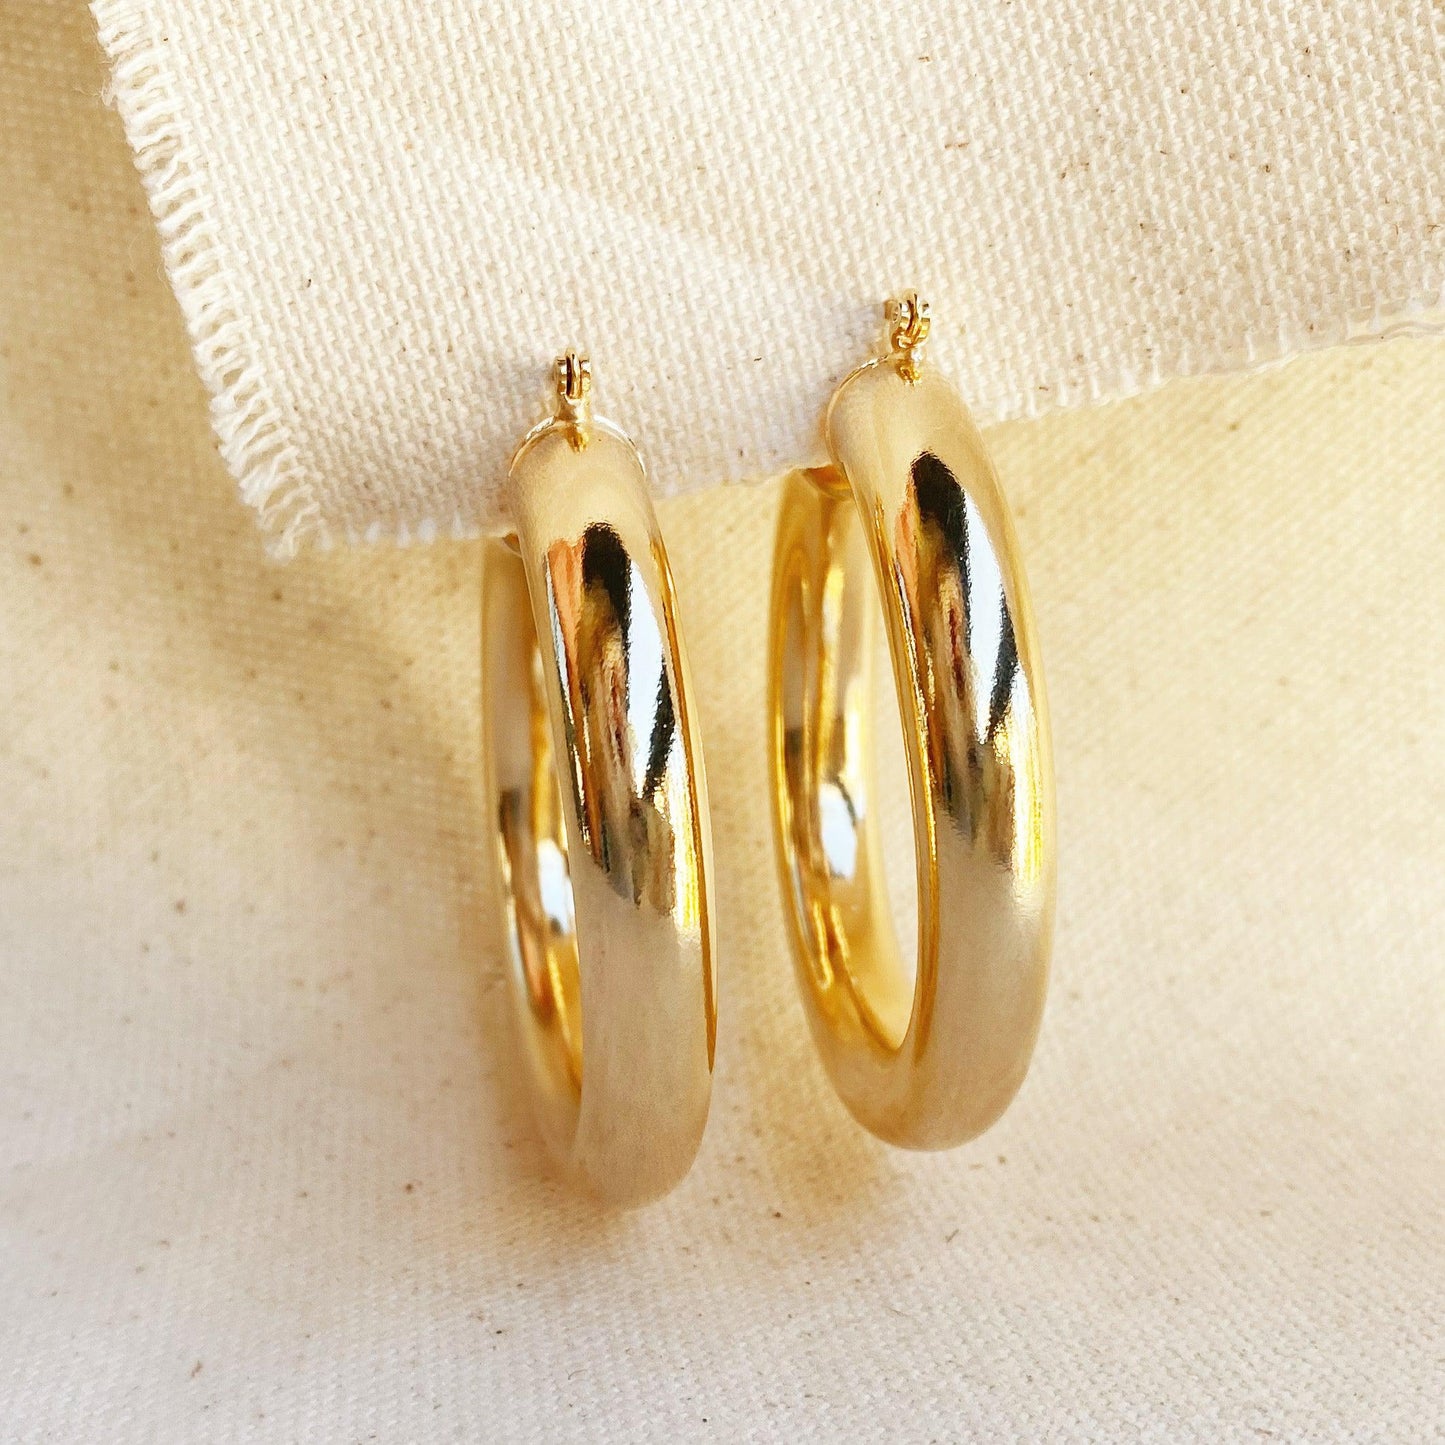 GoldFi Selena Design 18k Gold Filled Chunky Plain Tube Hoop Earrings